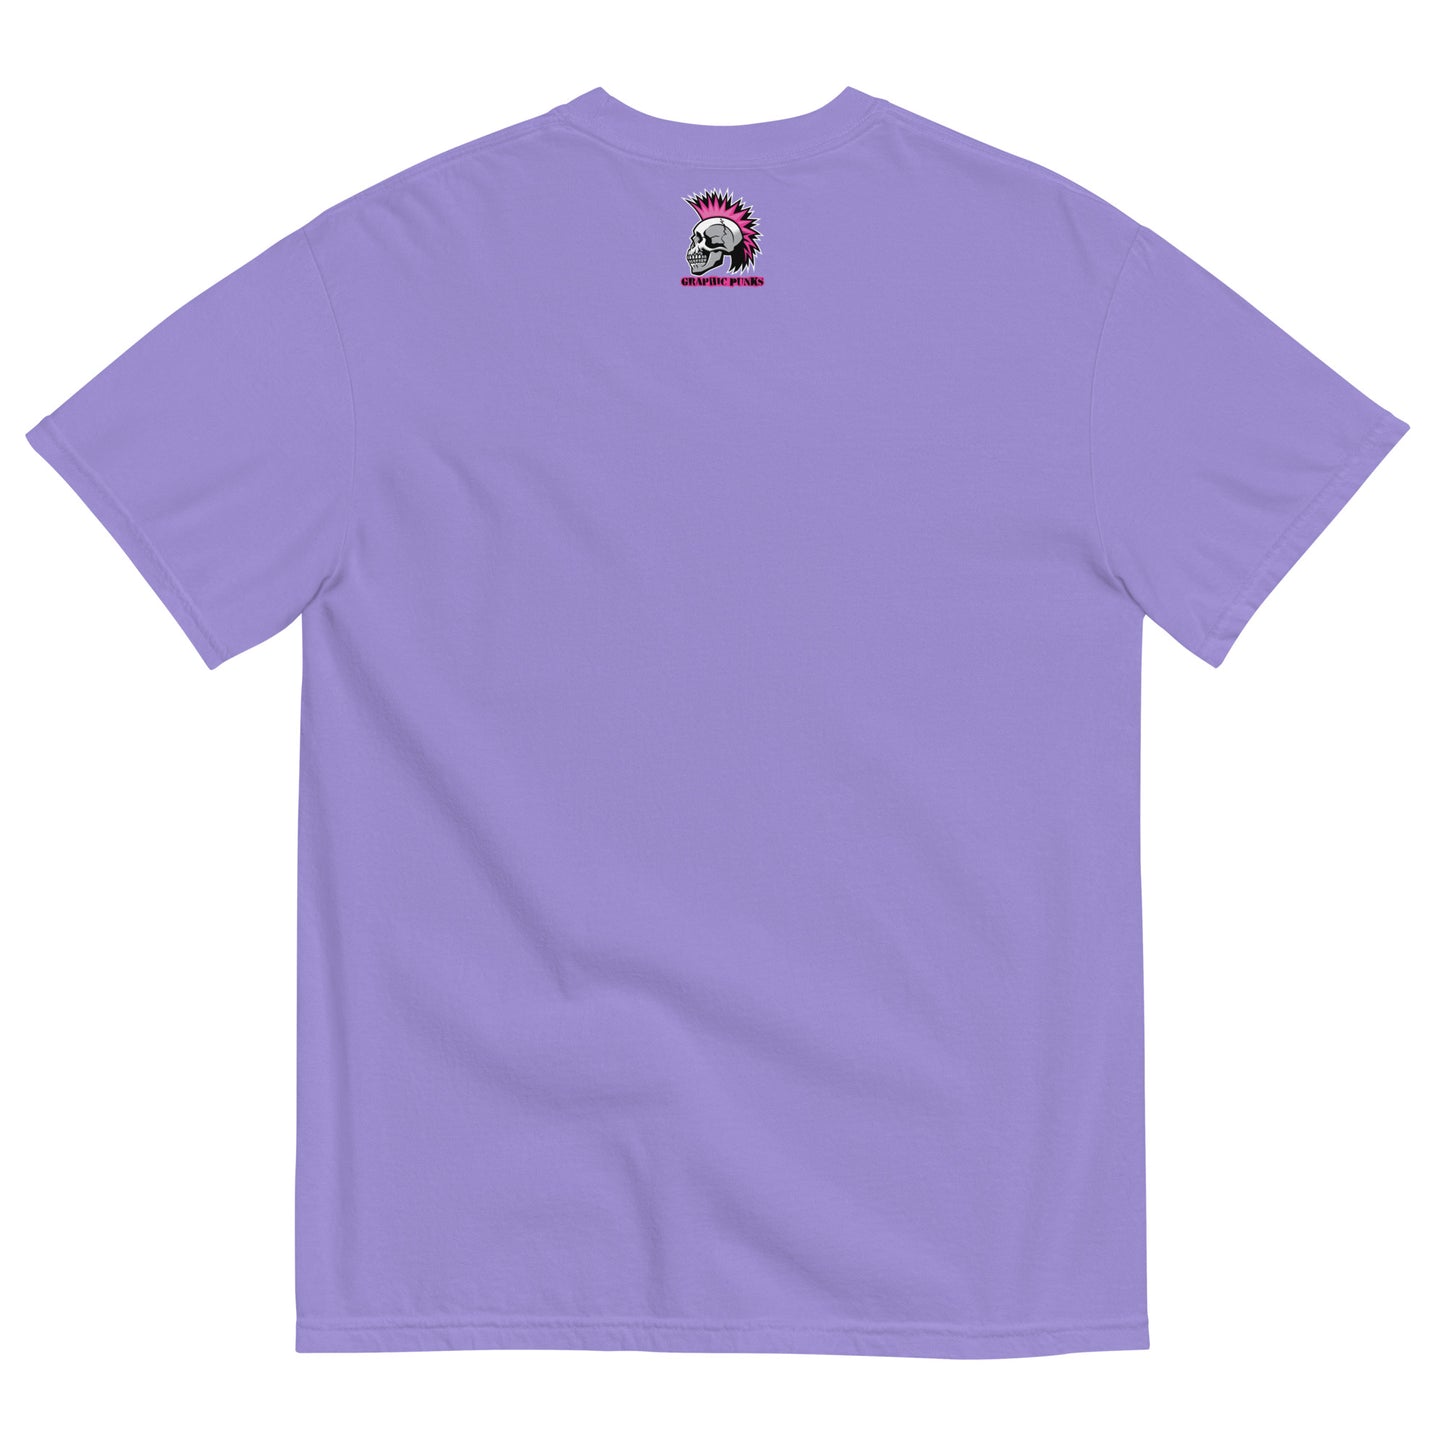 Zombie Starfish Unisex Garment-Dyed Heavyweight t-shirt